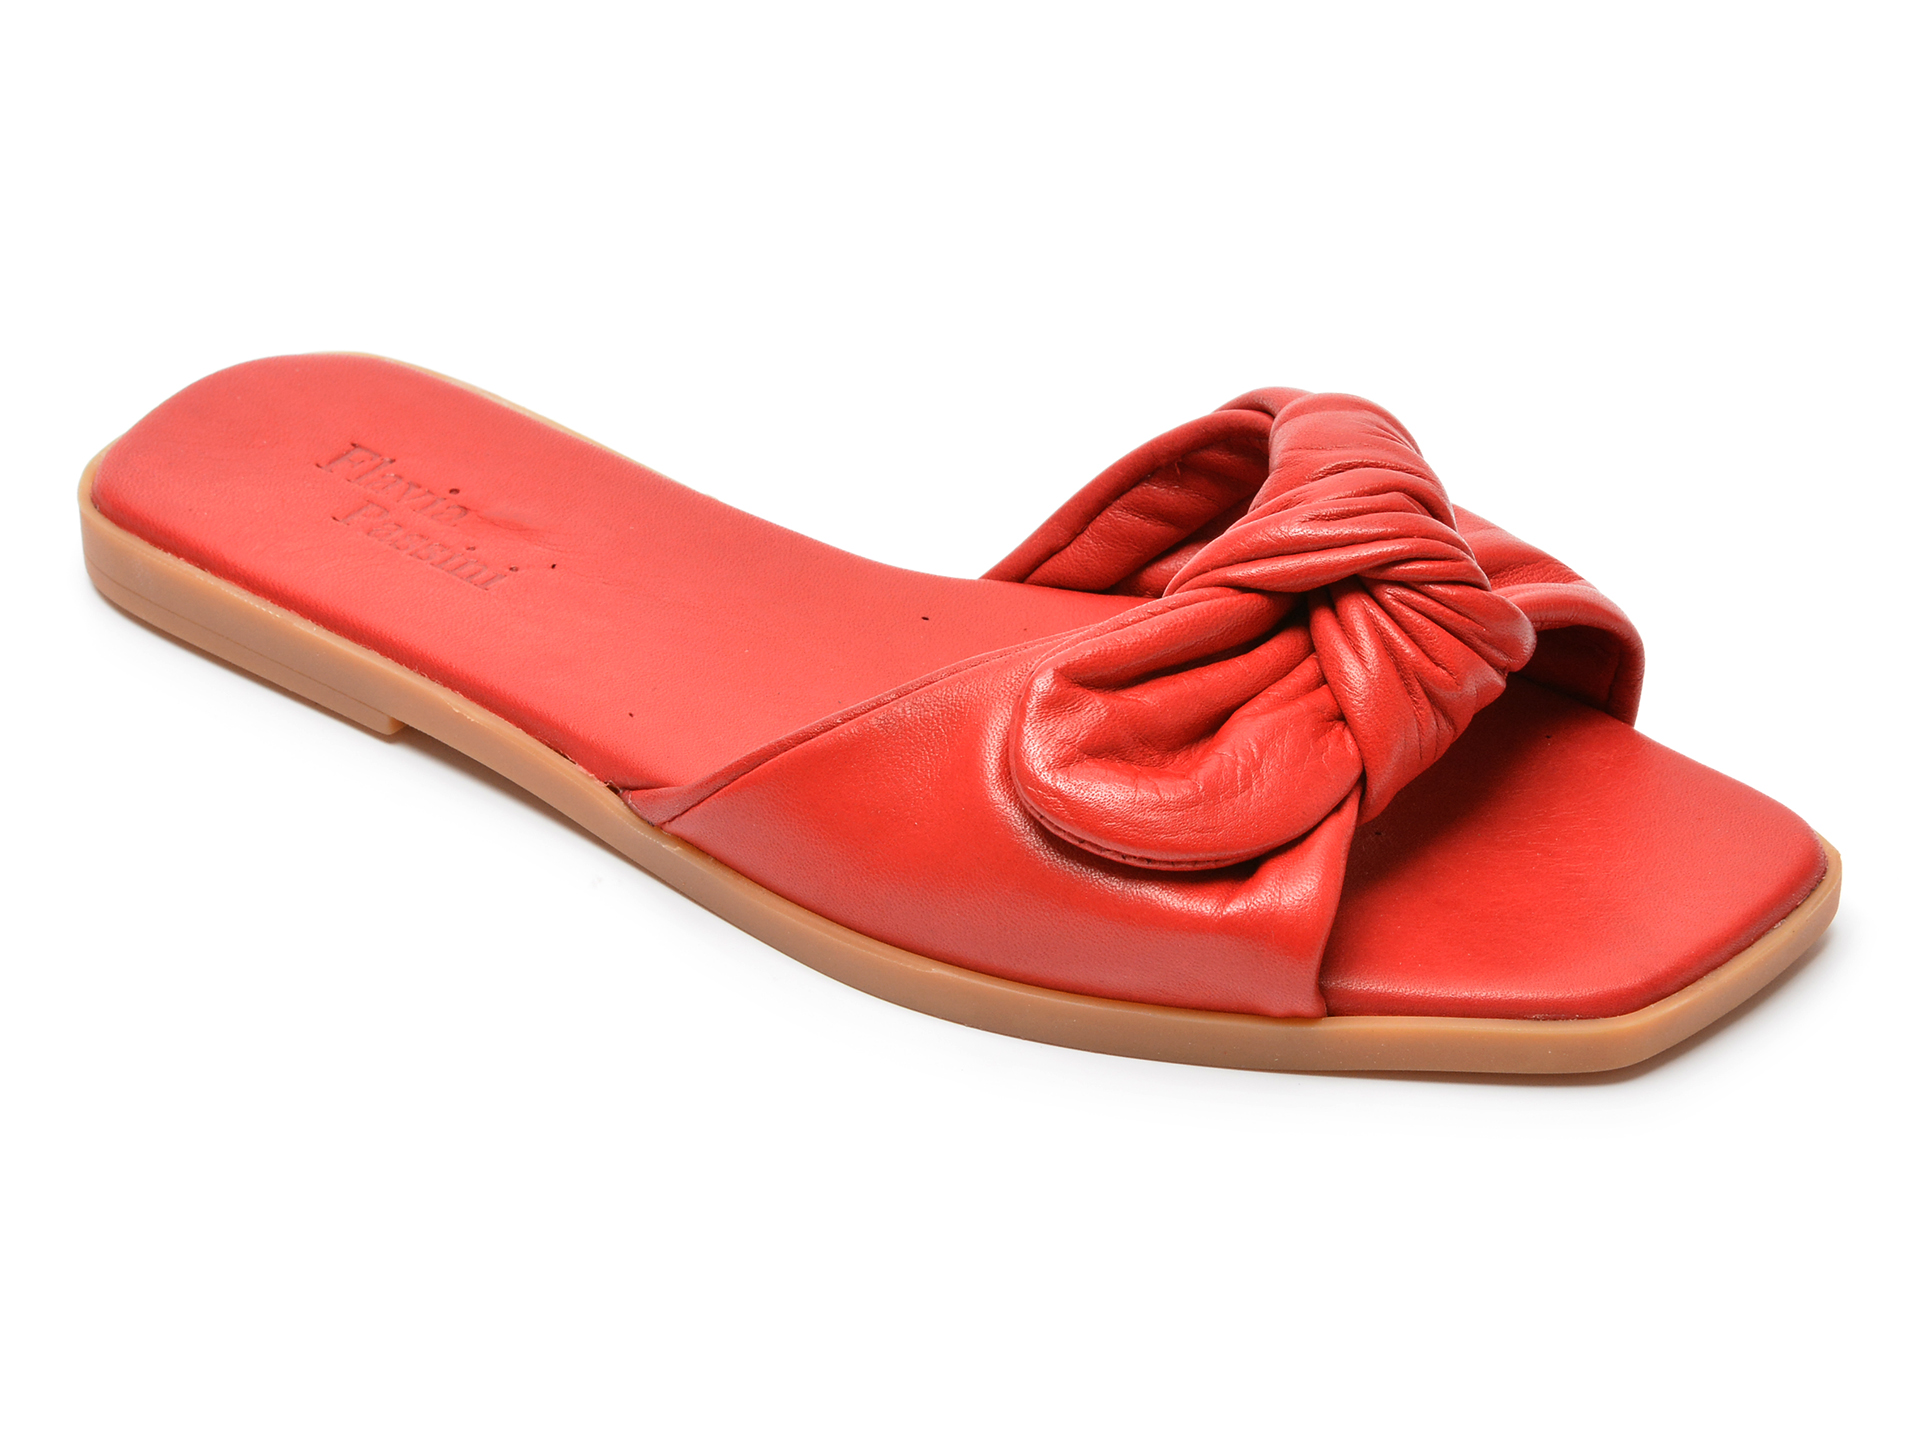 Papuci FLAVIA PASSINI rosii, 22092, din piele naturala